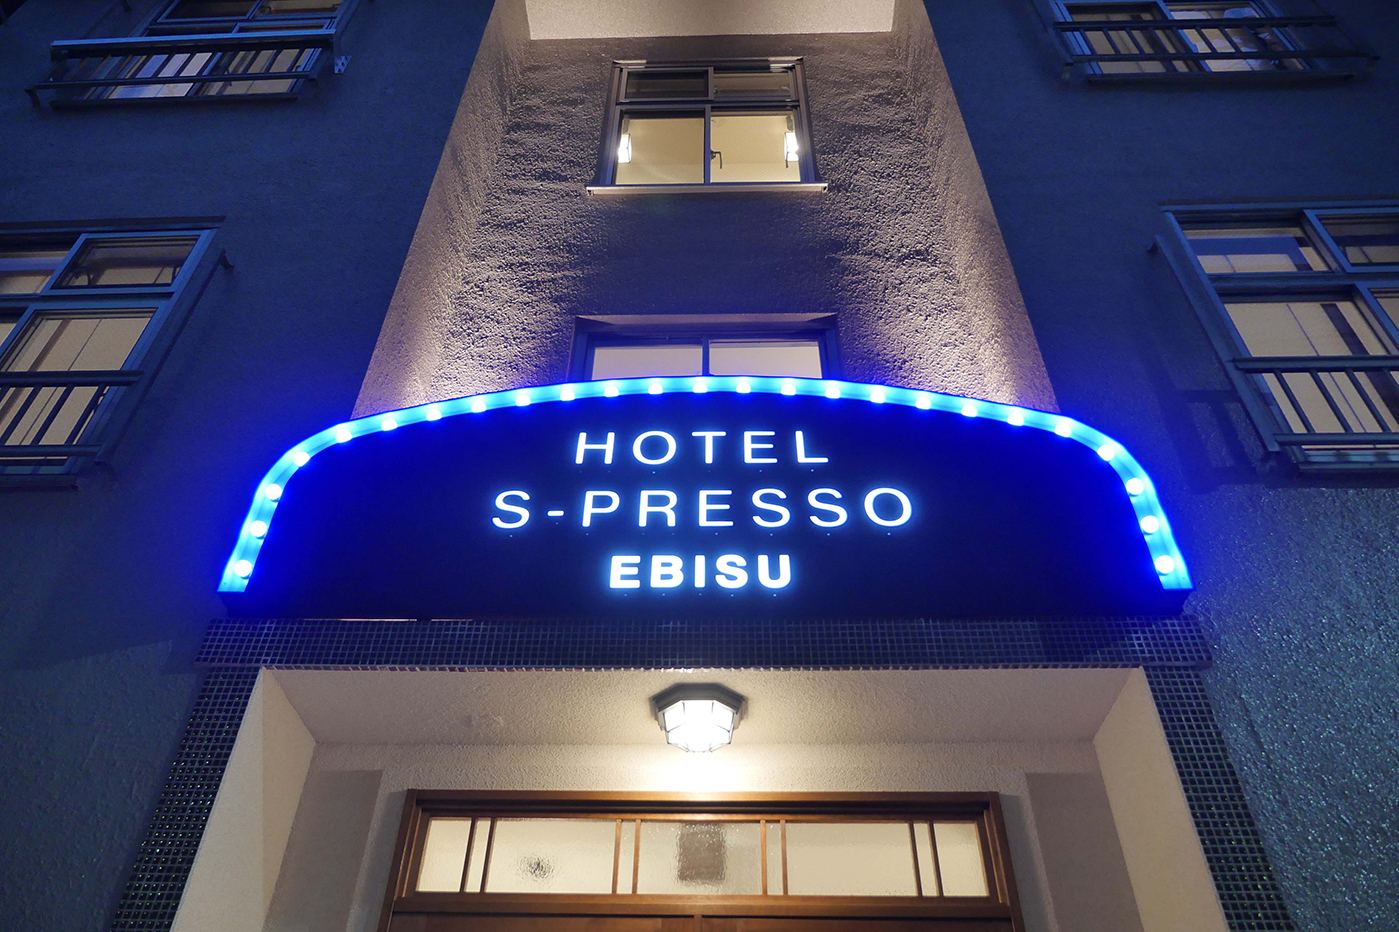 HOTEL S-PRESSO EBISU